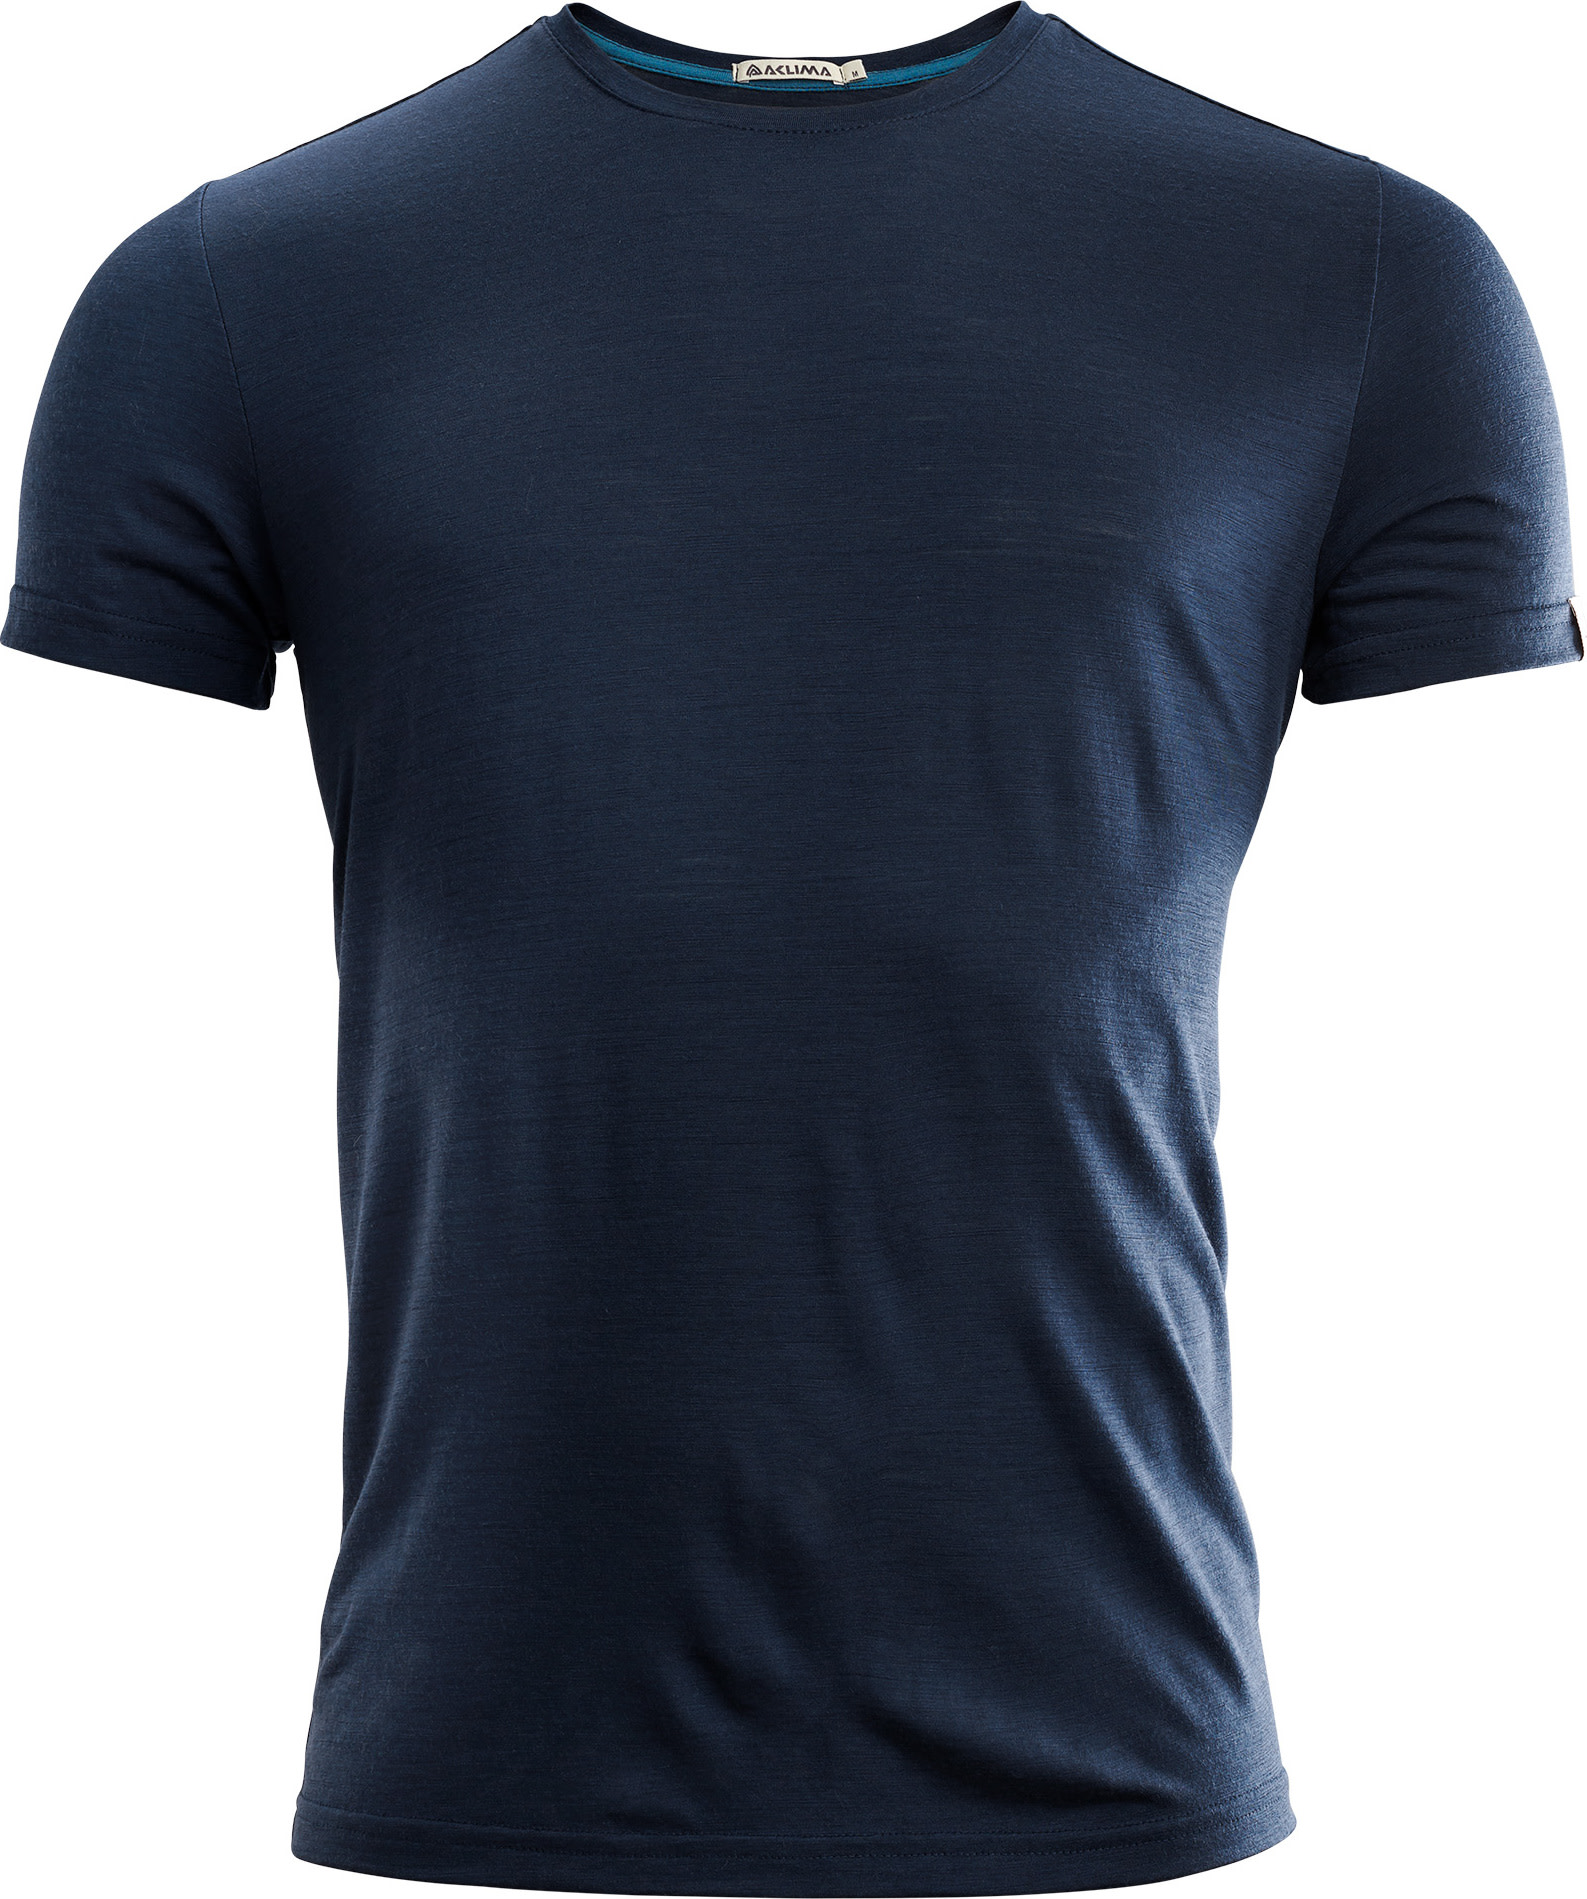 Men’s LightWool T-shirt Round Neck Navy Blazer